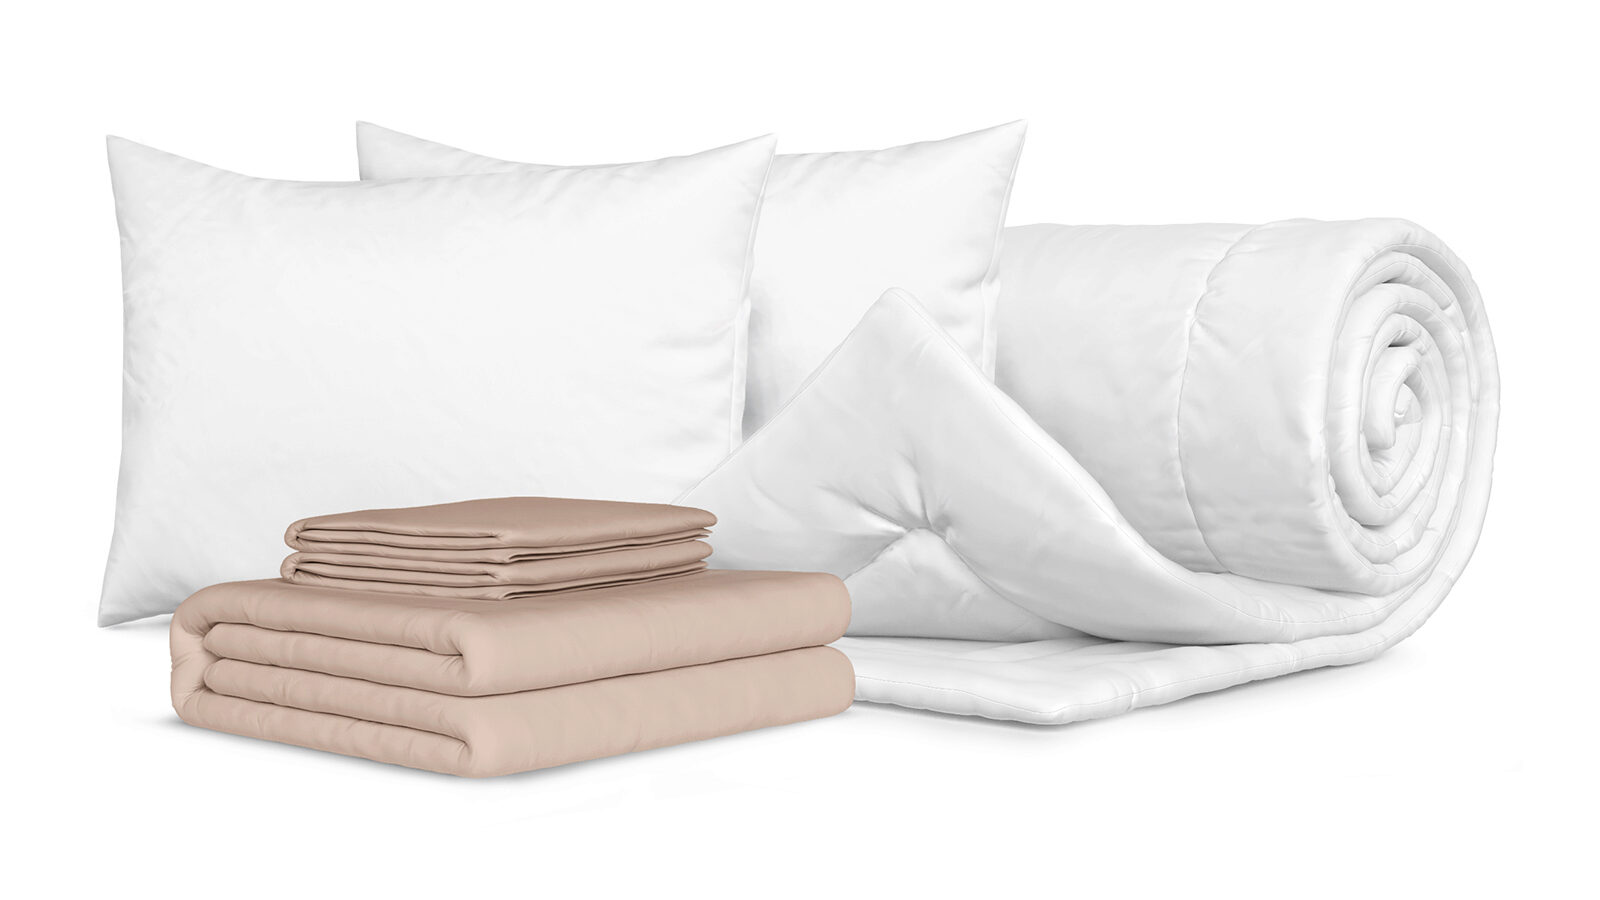 Комплект Одеяло Beat + 2 Подушка Sky + Комплект постельного белья Comfort Cotton, цвет: Льняной